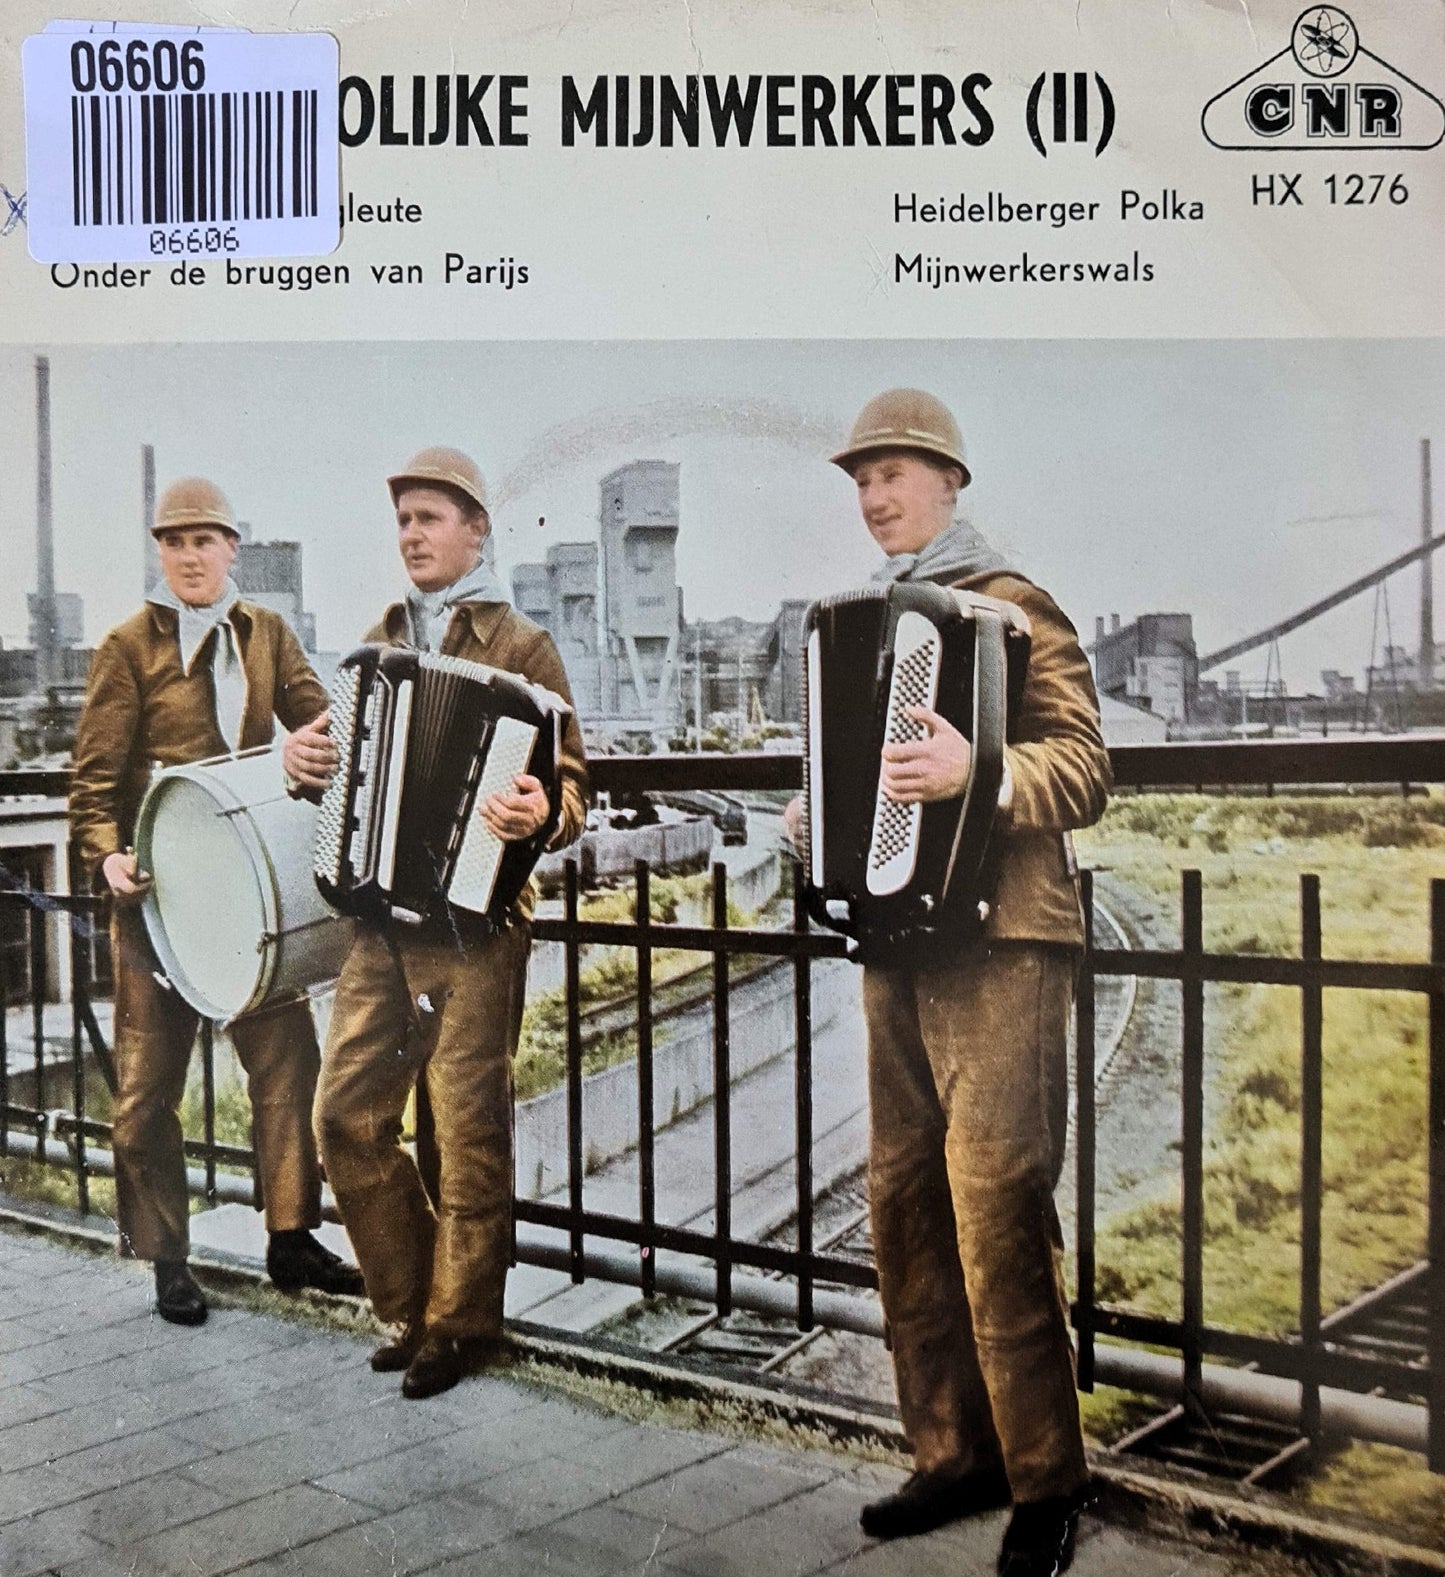 Vrolijke Mijnwerkers - Die frohliche bergleute 06606 Vinyl Singles VINYLSINGLES.NL